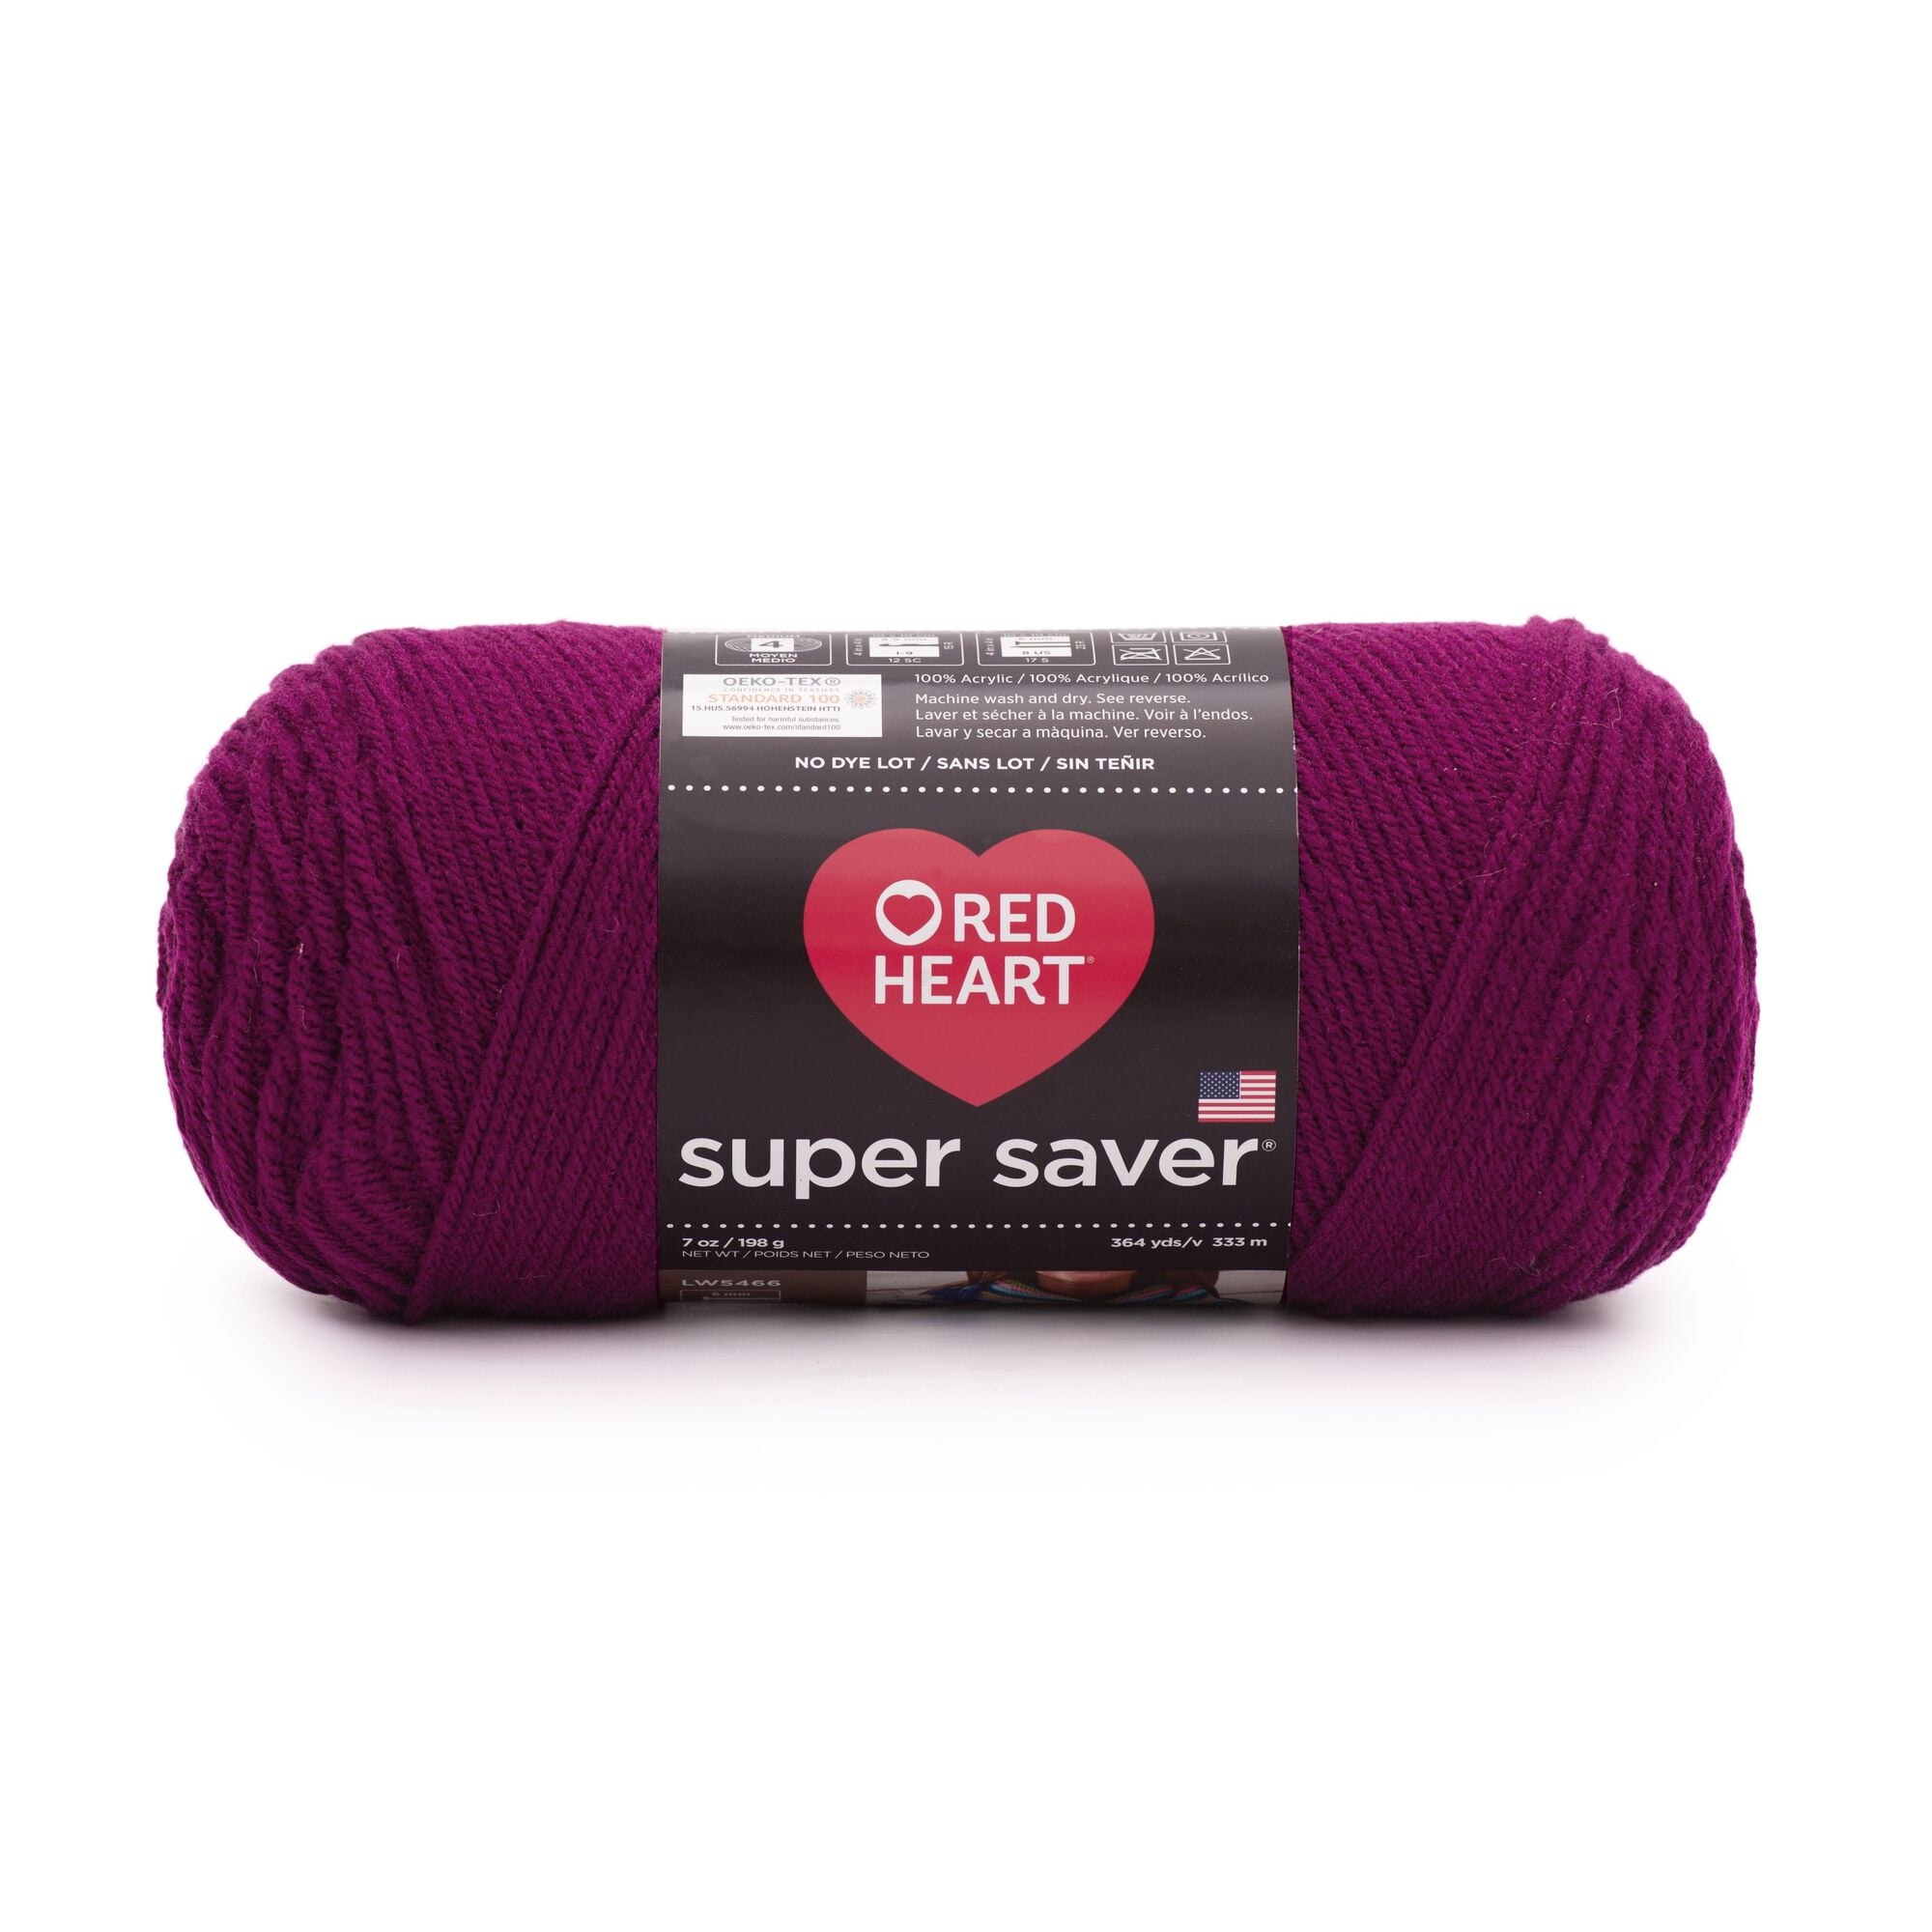 Red Heart Super Saver Yarn, Black 0312, Medium 4 - 1 skein, 7 oz